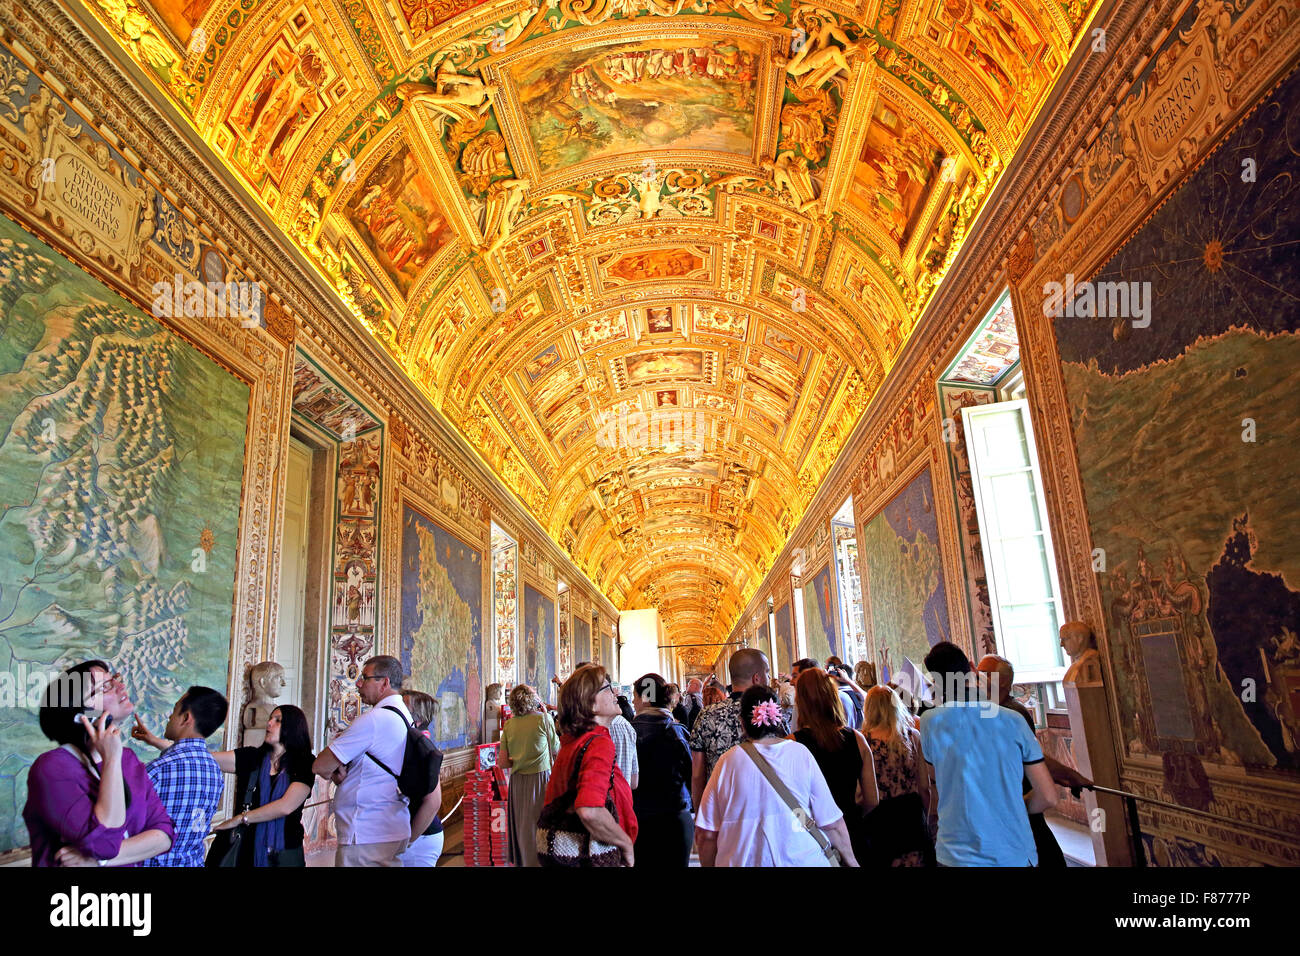 The Galleria della Carte Geografiche or Gallery of Maps in the Vatican Museum. Stock Photo